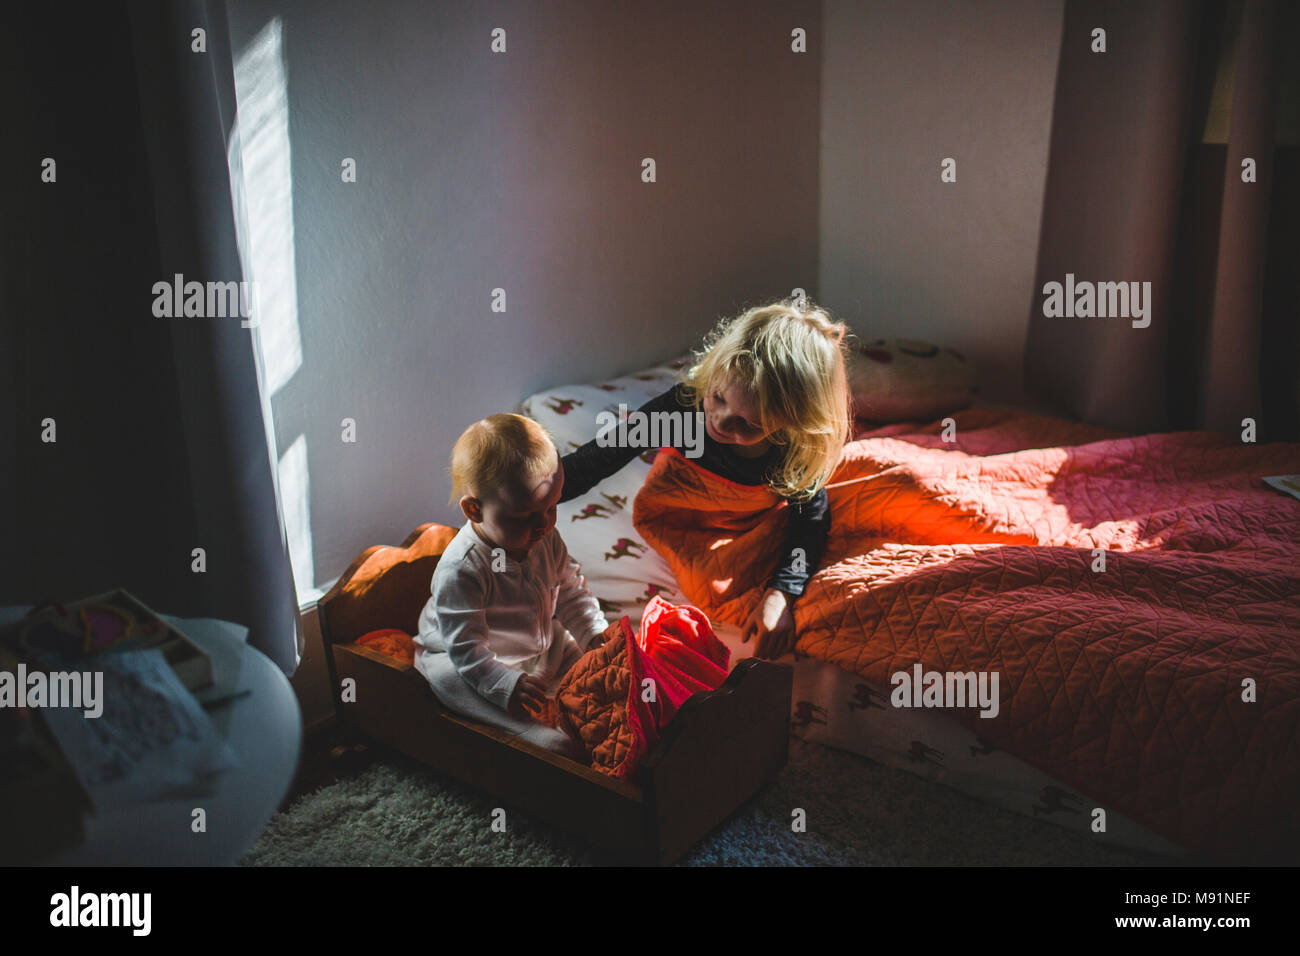 Ragazza che conforta il bambino nella culla babydoll trendy camera per bambini luce drammatica Foto Stock